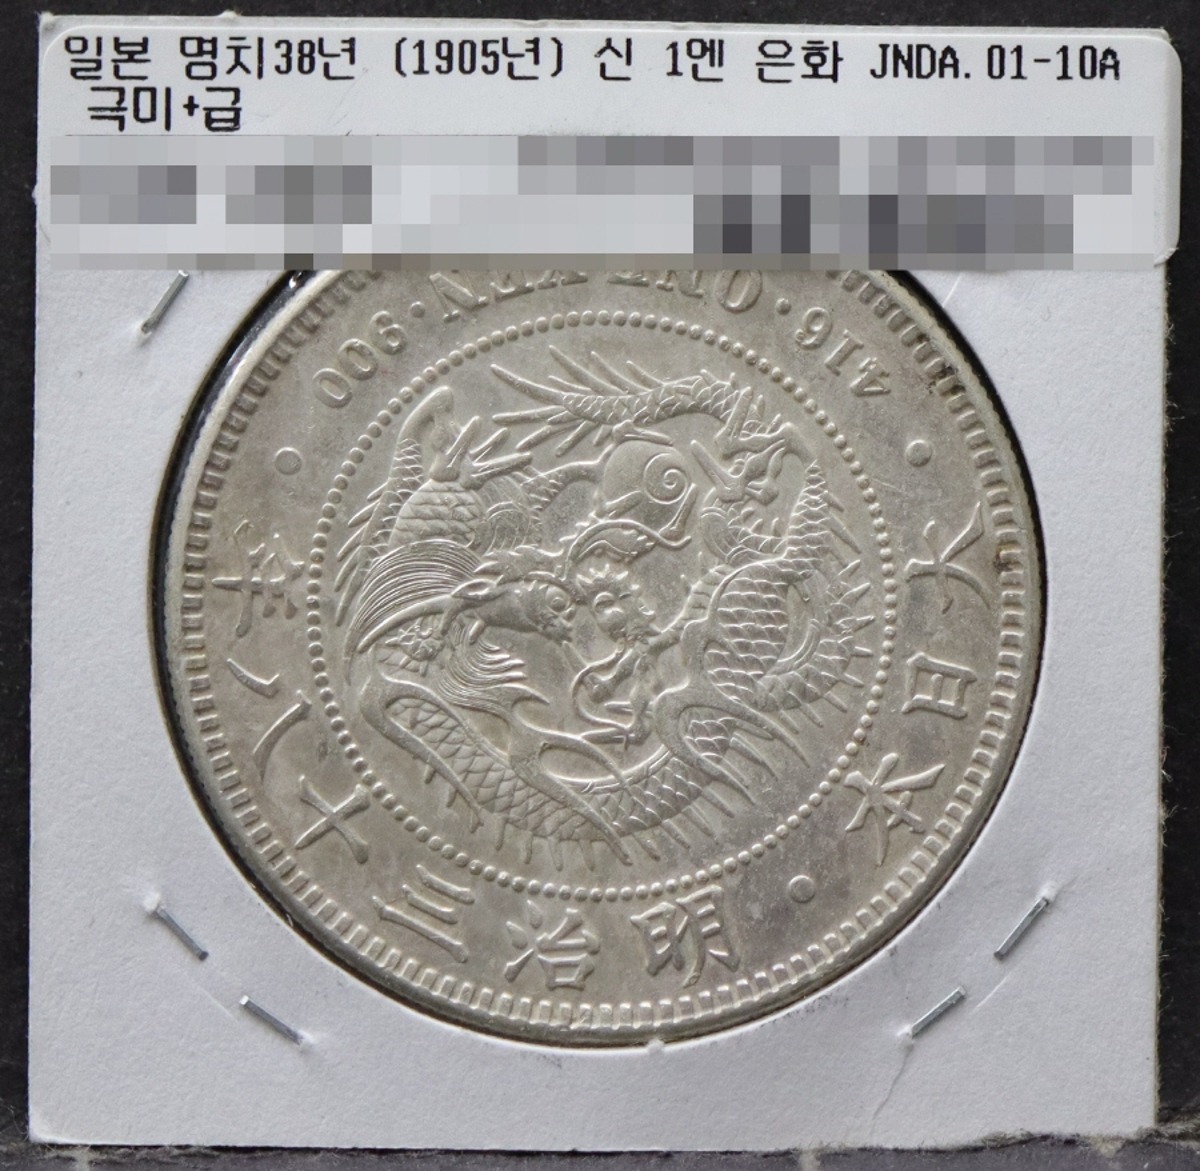 일본 1905년 (명치 38년) 1엔 일엔 은화 극미품+